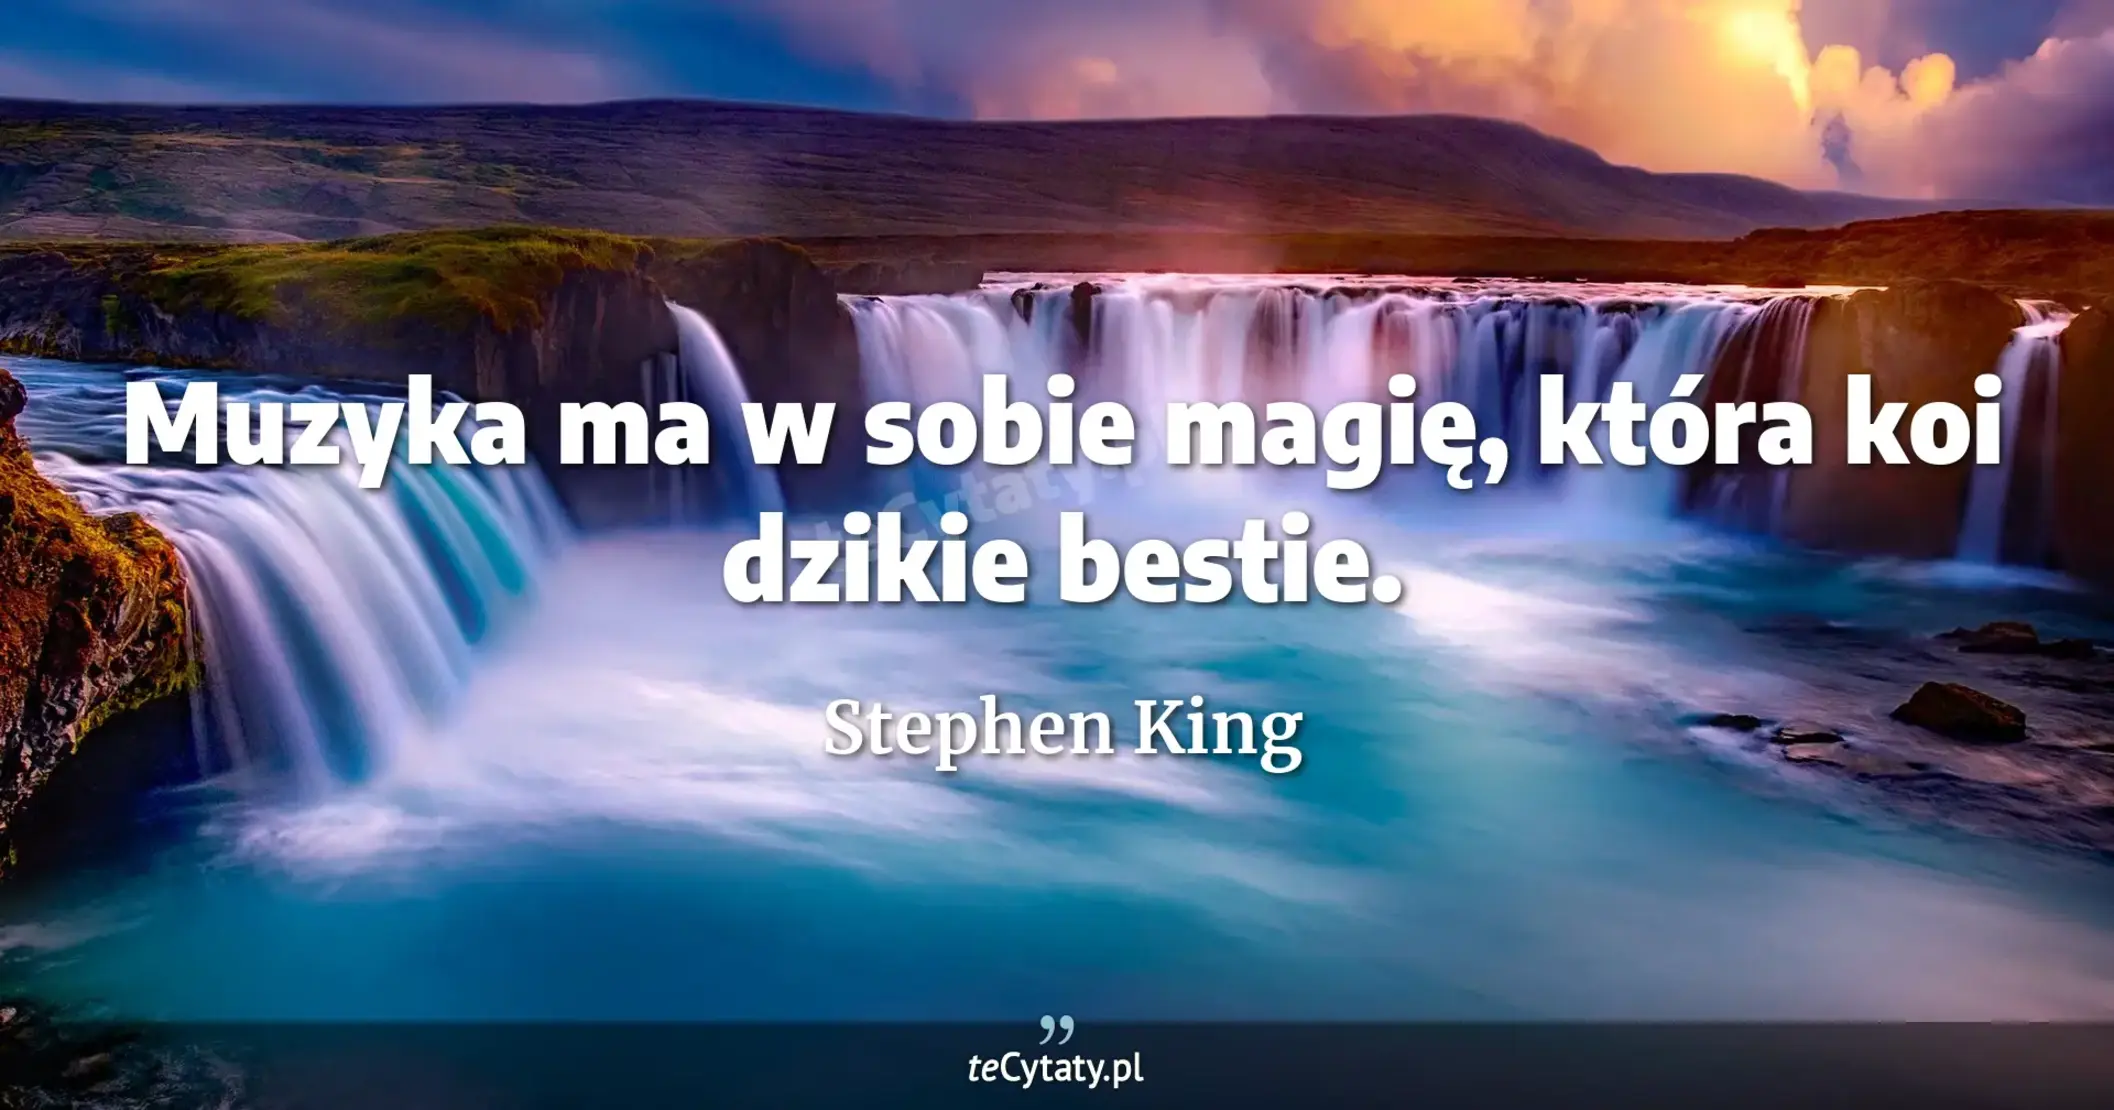 Muzyka ma w sobie magię, która koi dzikie bestie. - Stephen King